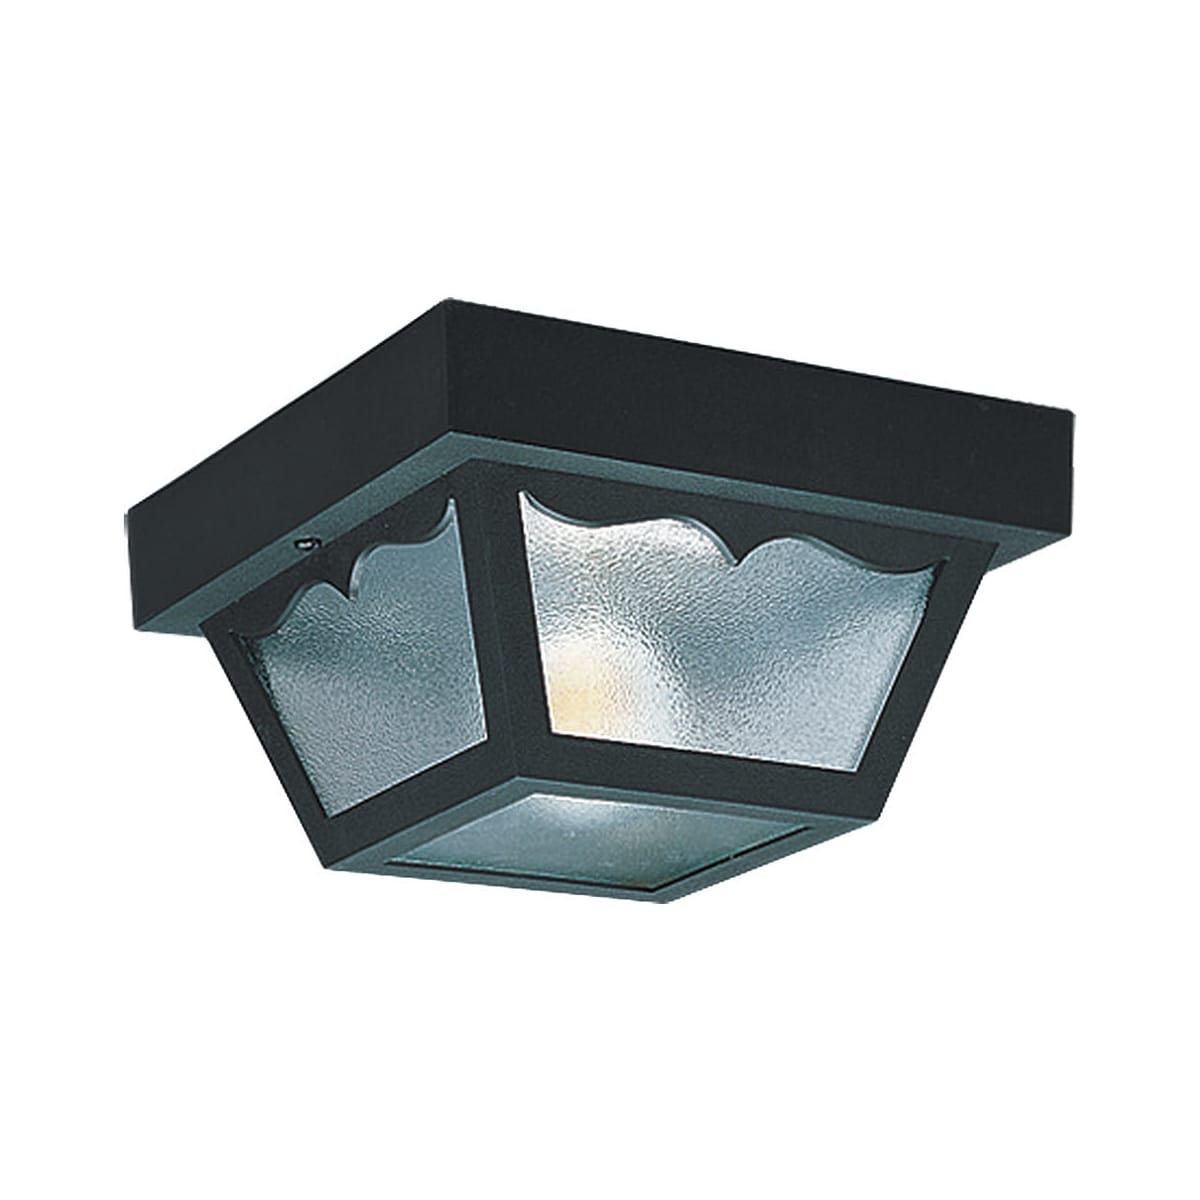 Sea Gull Lighting two-light al aire libre de luminaria de techo en Transparente 7569-32 